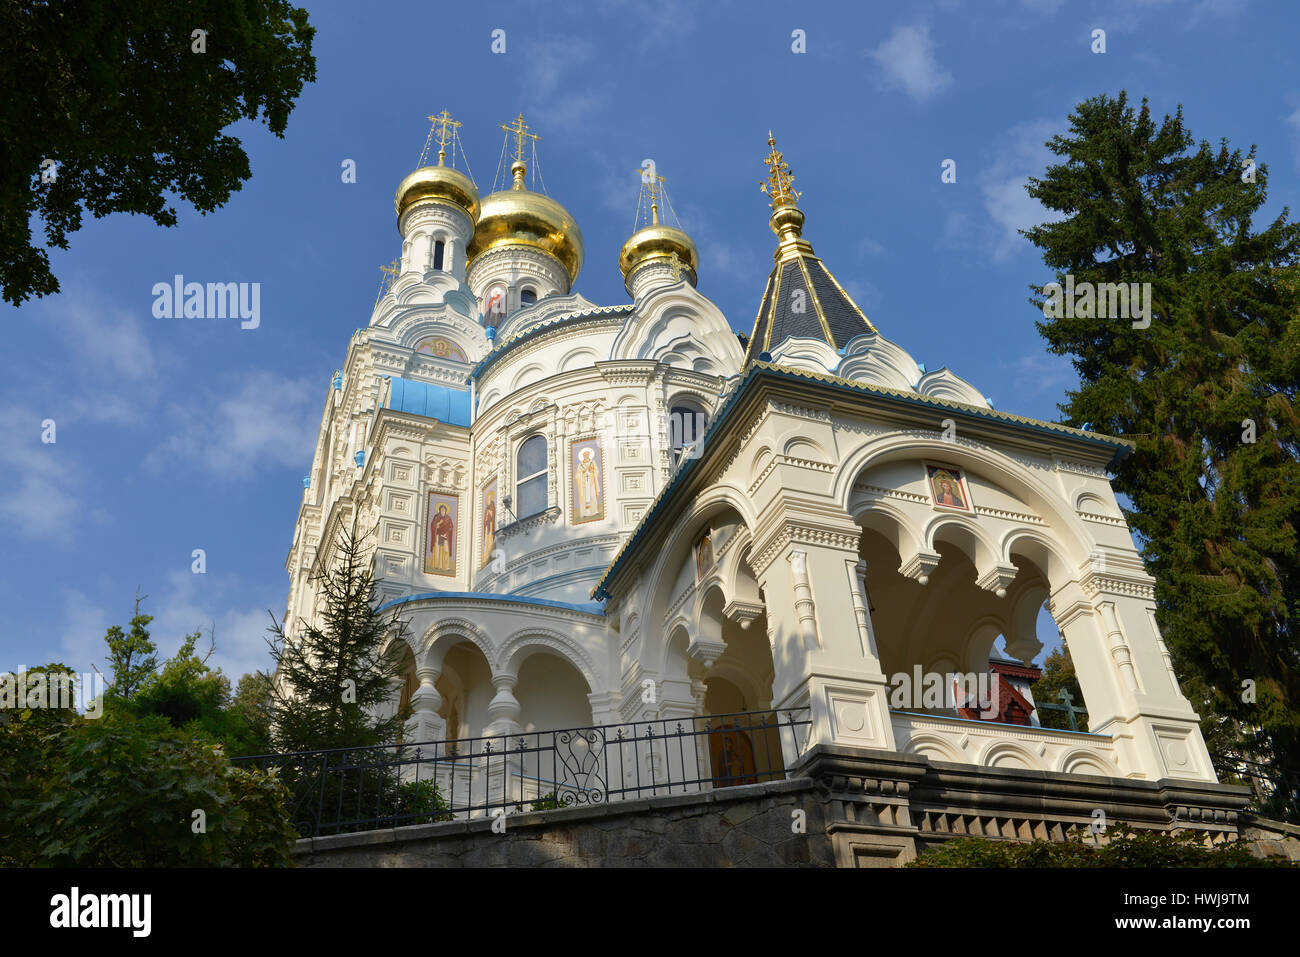 Russisch-Orthodoxe Kirche St. Peter und Paul, Koenig-Georg-Strasse, Karlsbad, Tschechien Stock Photo